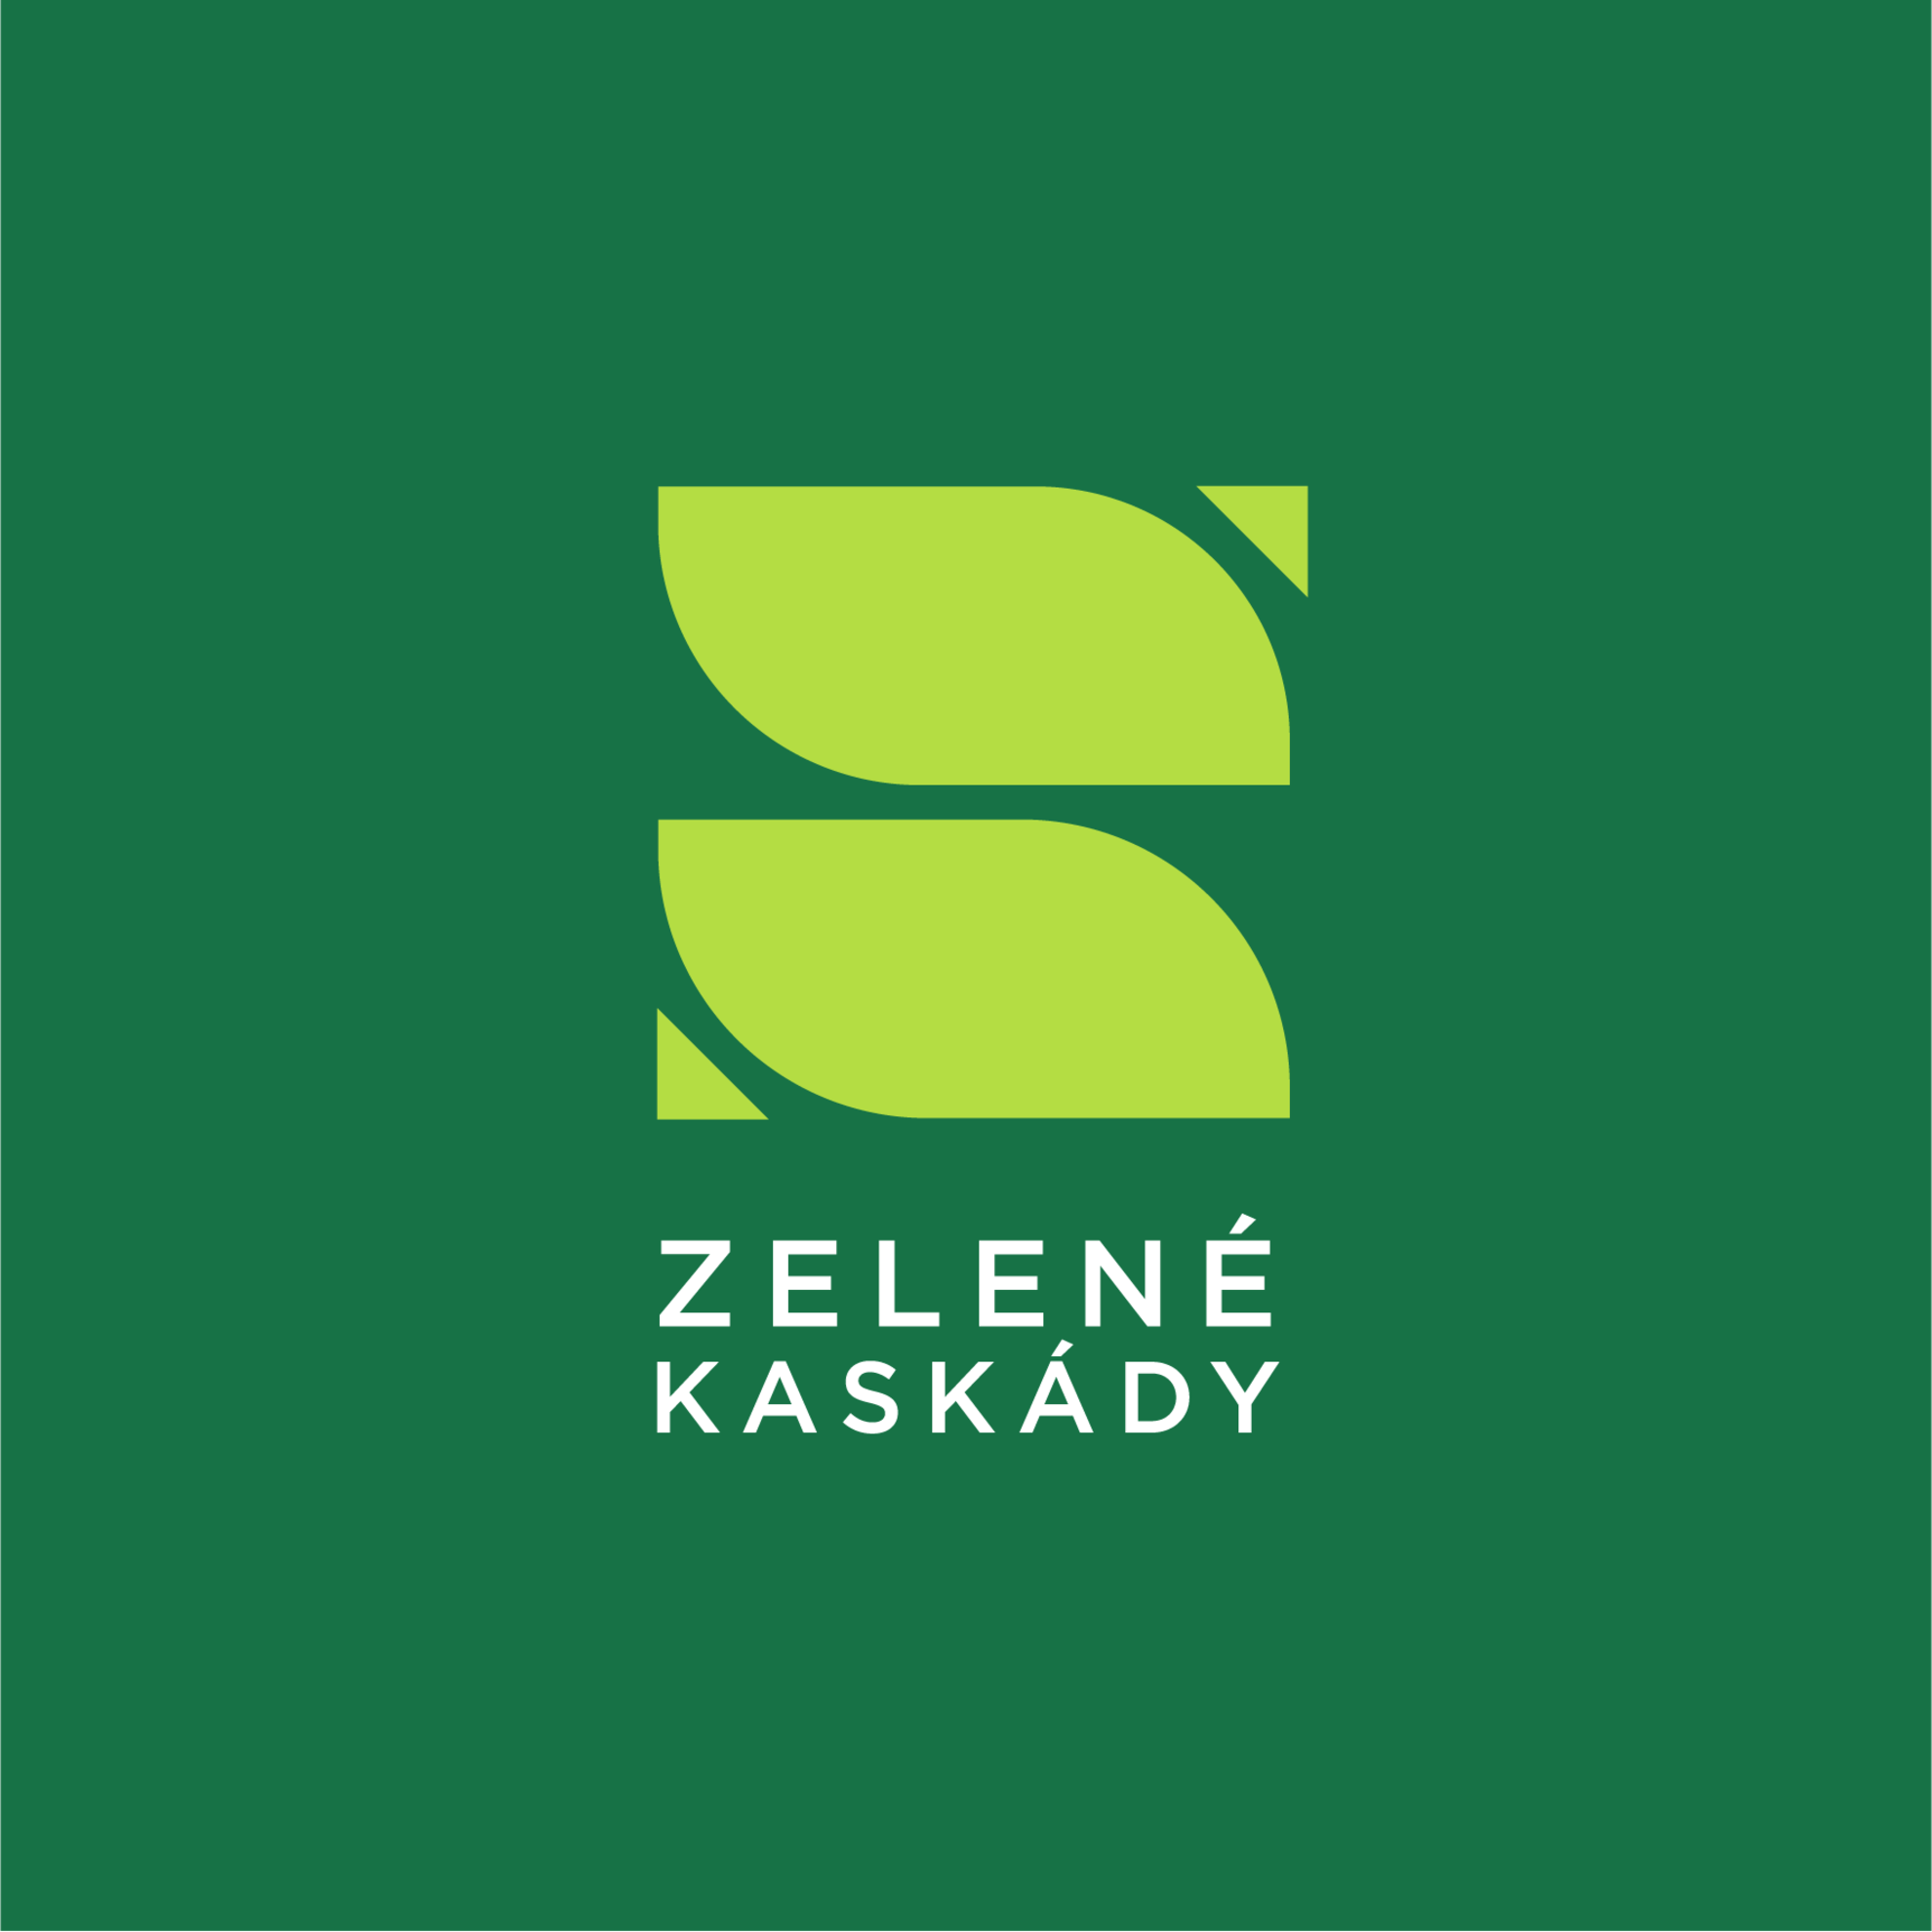 Zelené kaskády logo